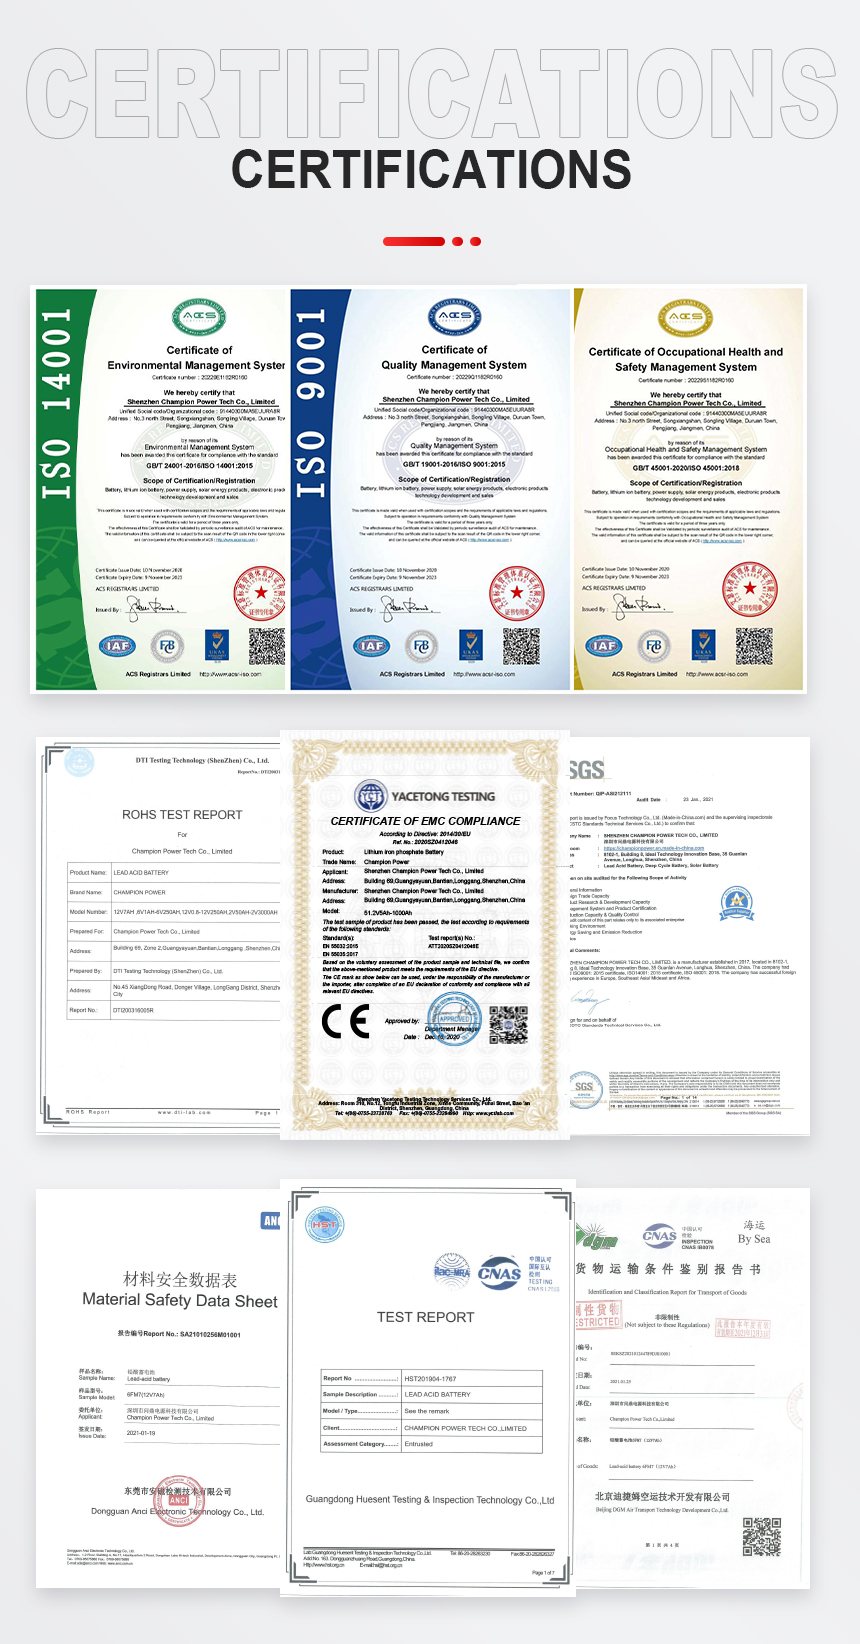 GFM1500 Certifications